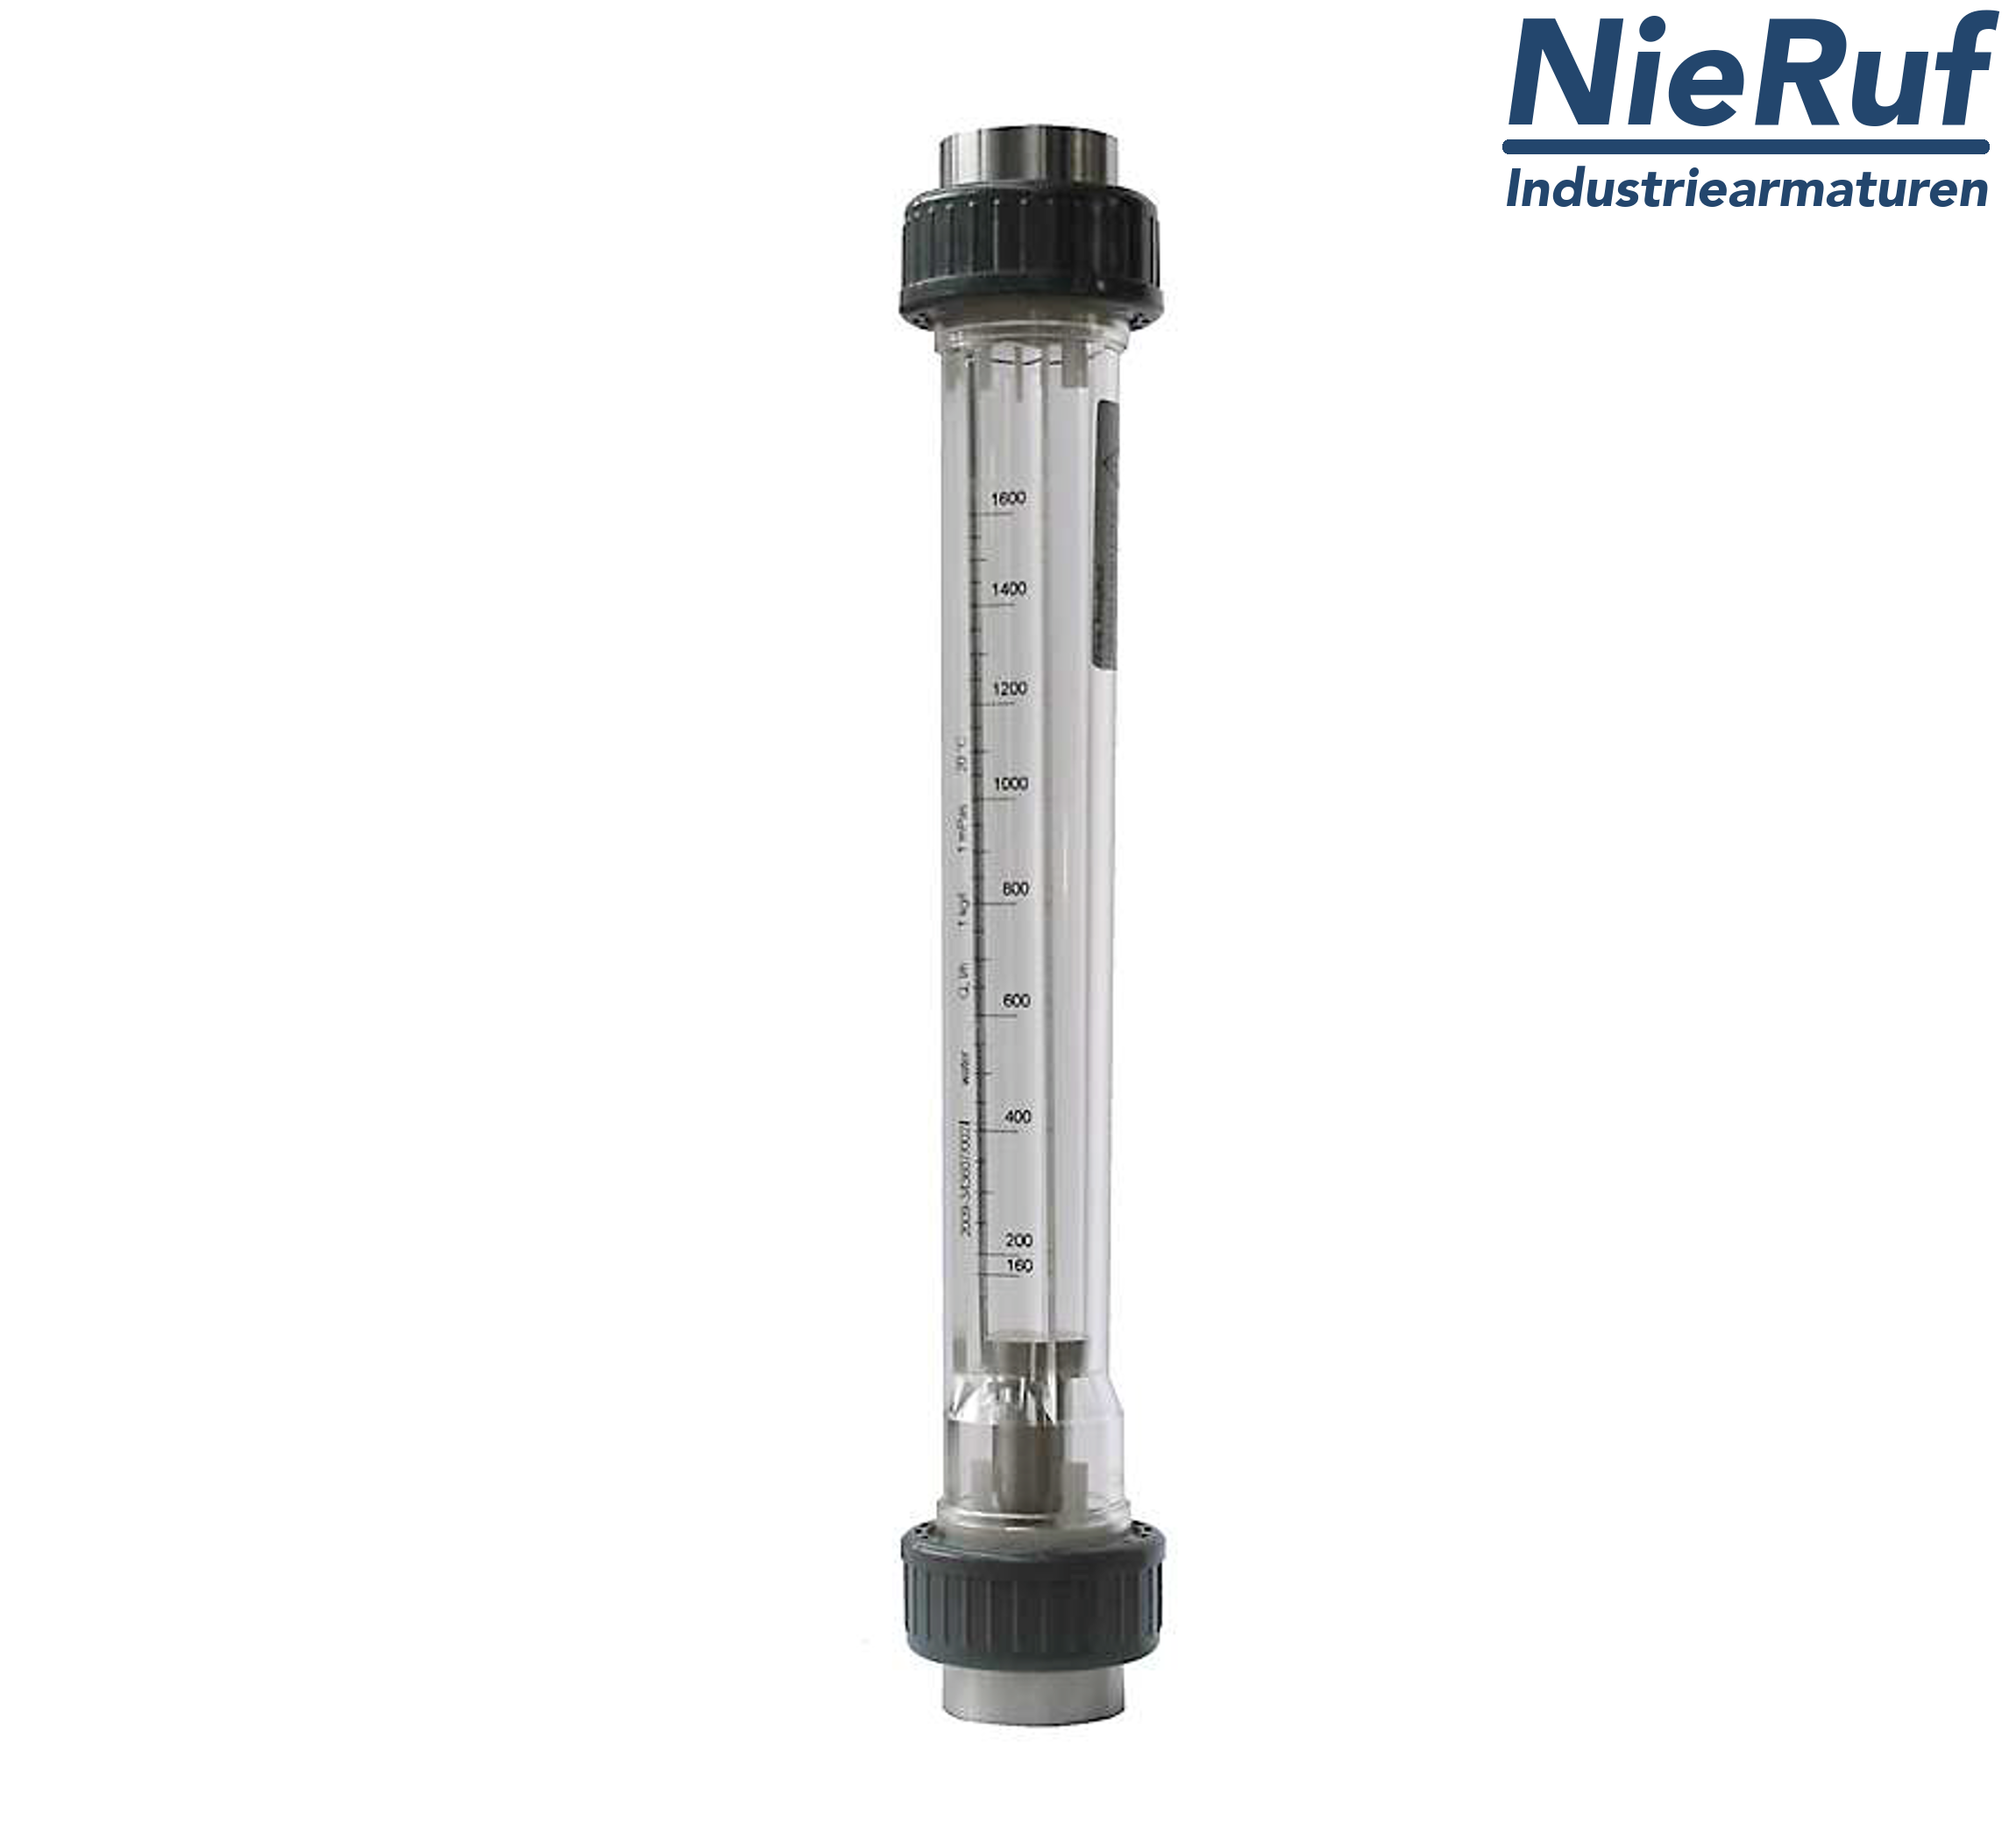 Variable area flowmeter 3/4" Inch NPT 1600.0 - 16000 l/h air NBR